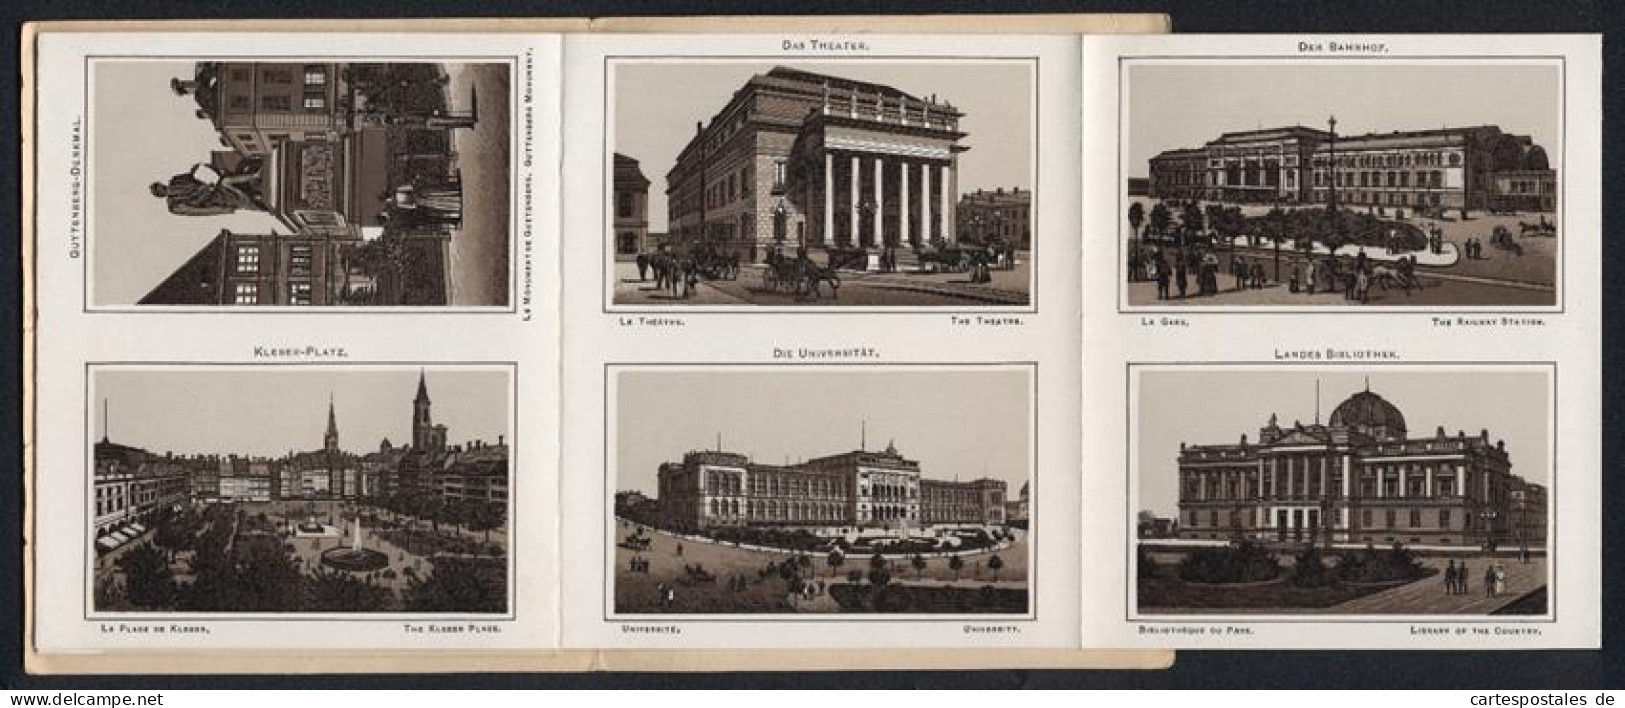 Leporello-Album 24 Lithographie-Ansichten Strassburg I. E., Bahnhof, Landesausschuss-Gebäude, Frauenhaus, Kleber-Platz  - Lithographien